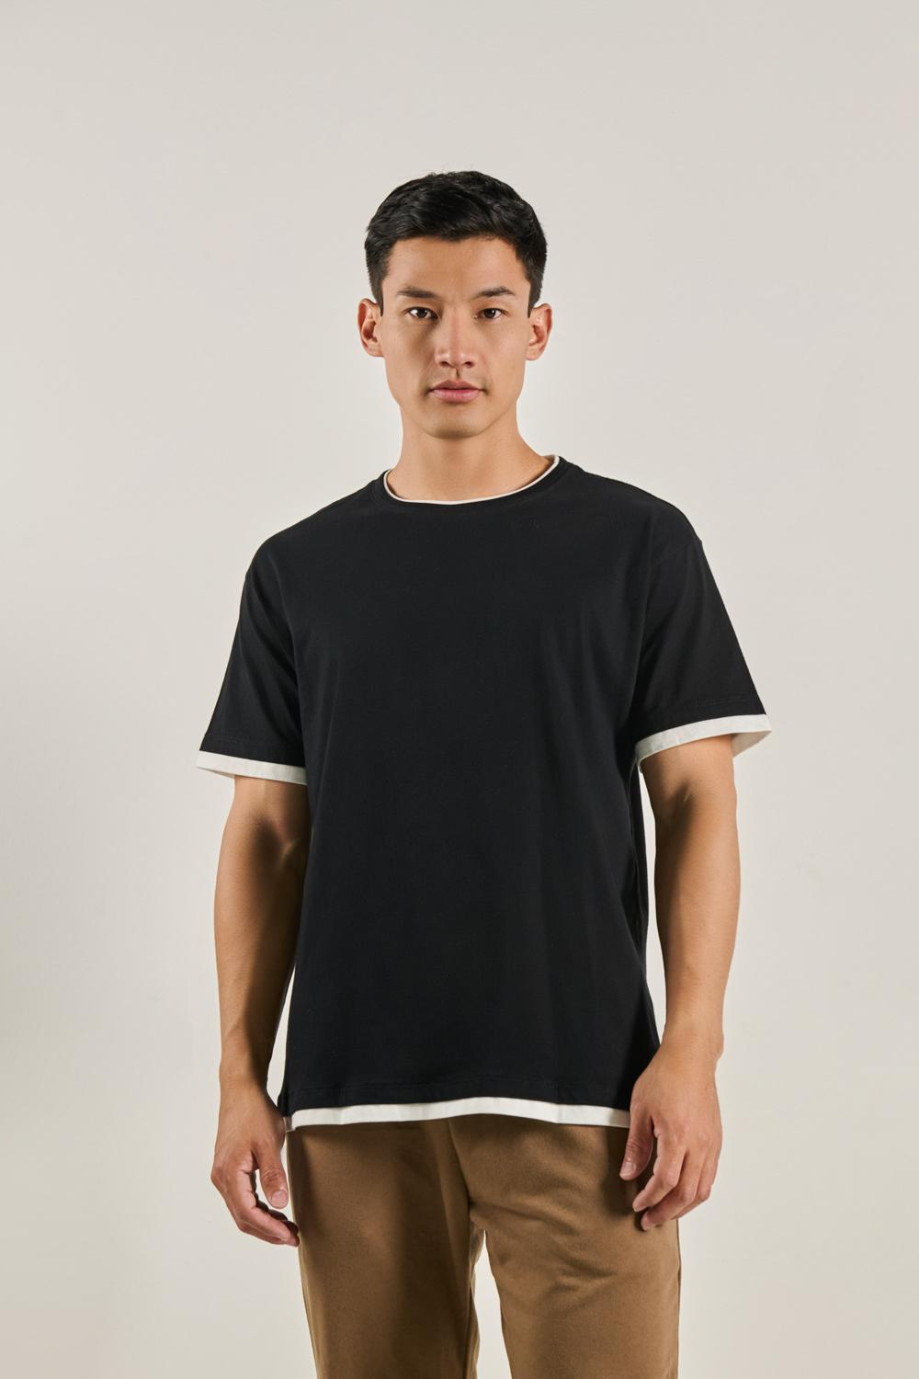 Camiseta unicolor para hombre oversize contrastes en mangas, bajo y cuello